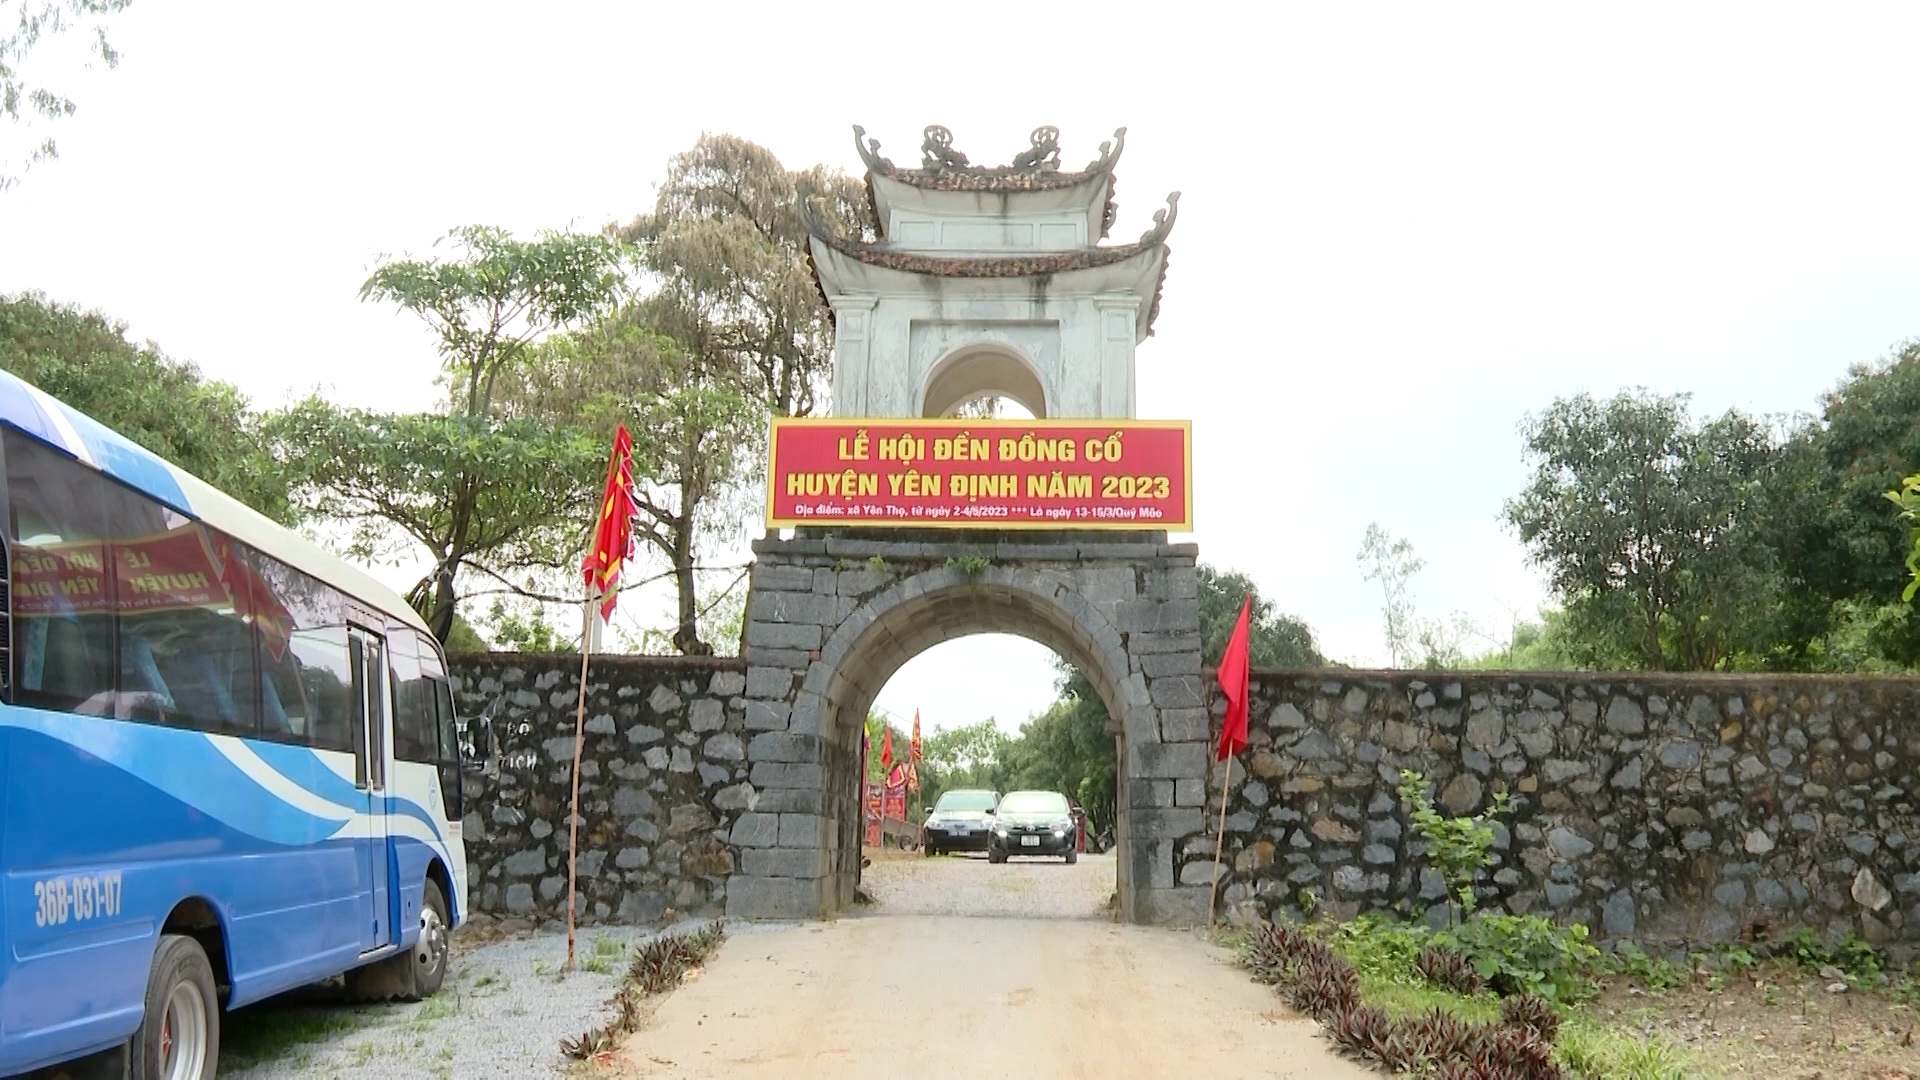 Yên Định: phát huy giá trị Di tích đền Đồng Cổ gắn với phát triển du lịch - Ảnh 3.